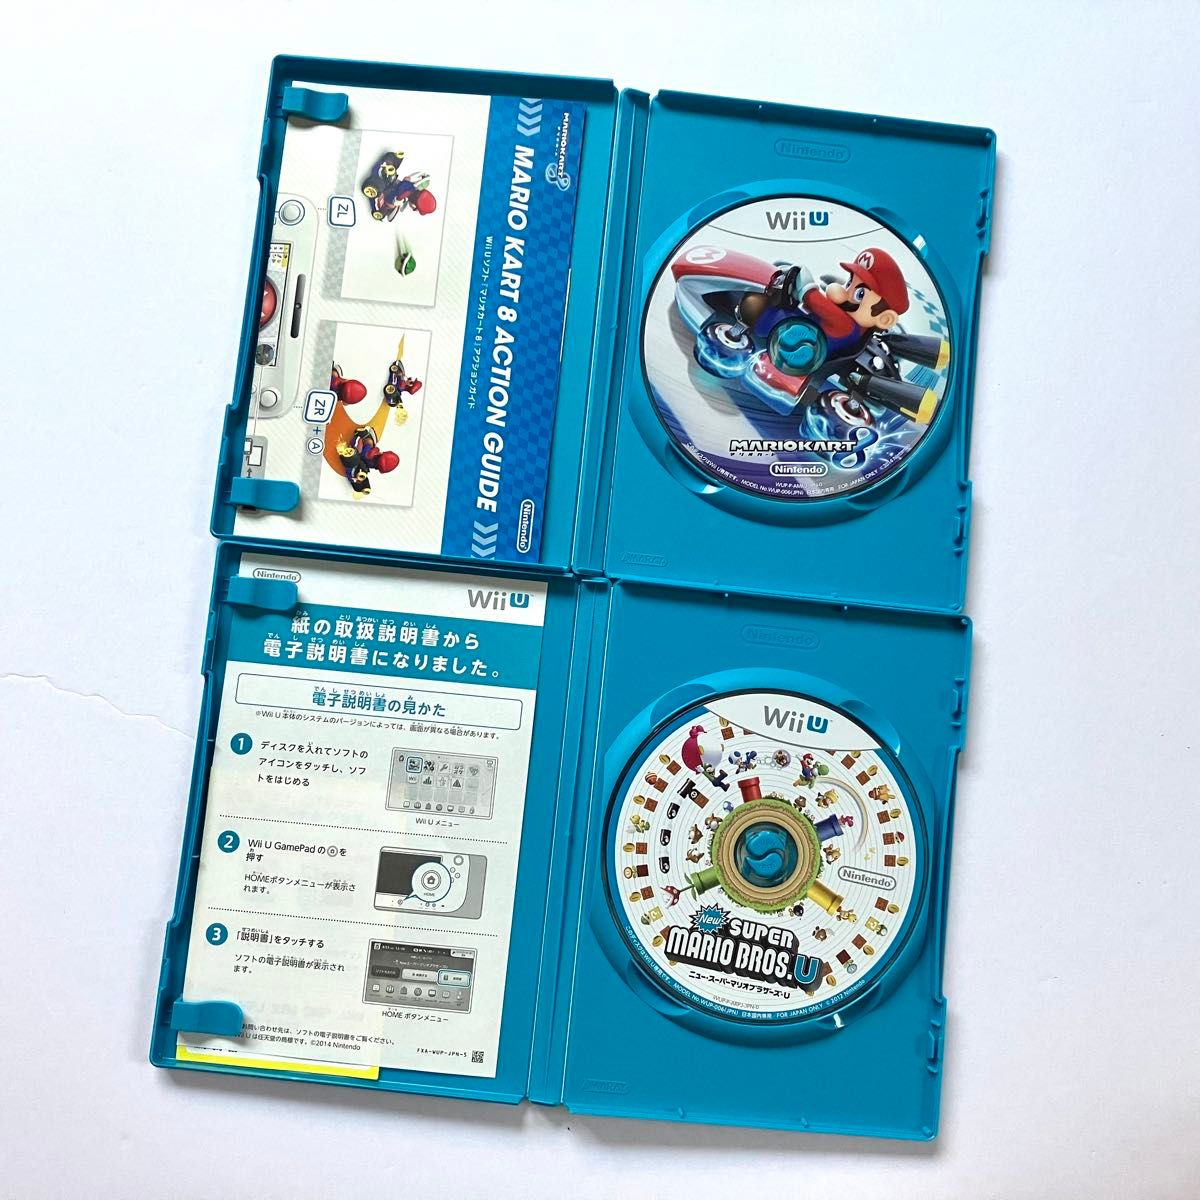 WiiU ピクミン3 ポッ拳 マリオカート8 NEWスーパーマリオブラザーズU 4点セット